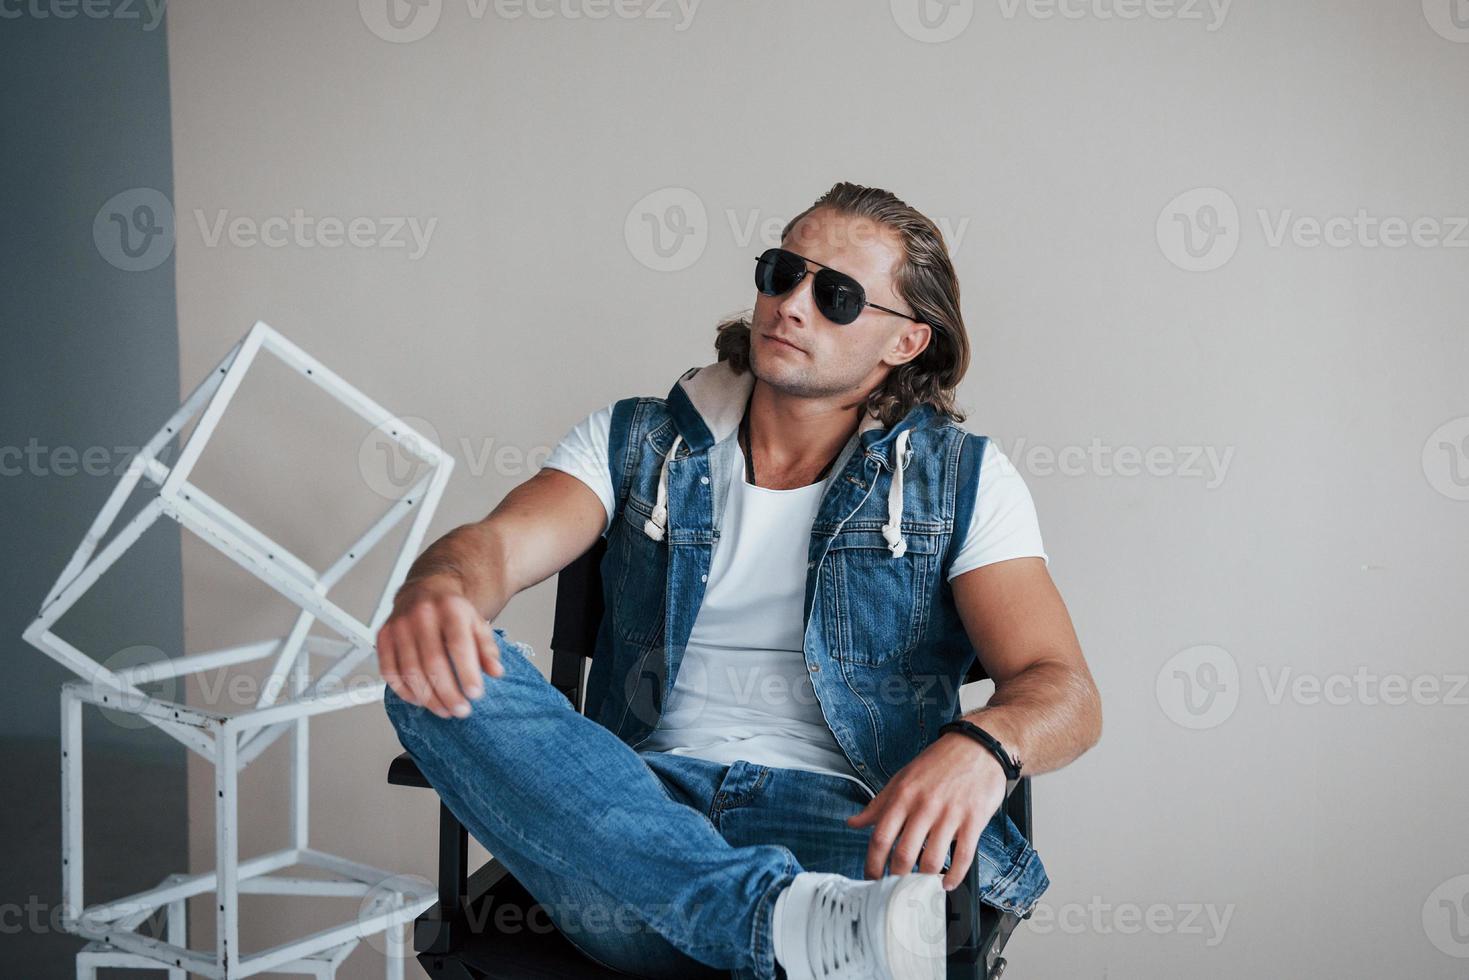 regard pensif. portrait de jeune homme à la mode avec des lunettes de soleil sur fond gris photo